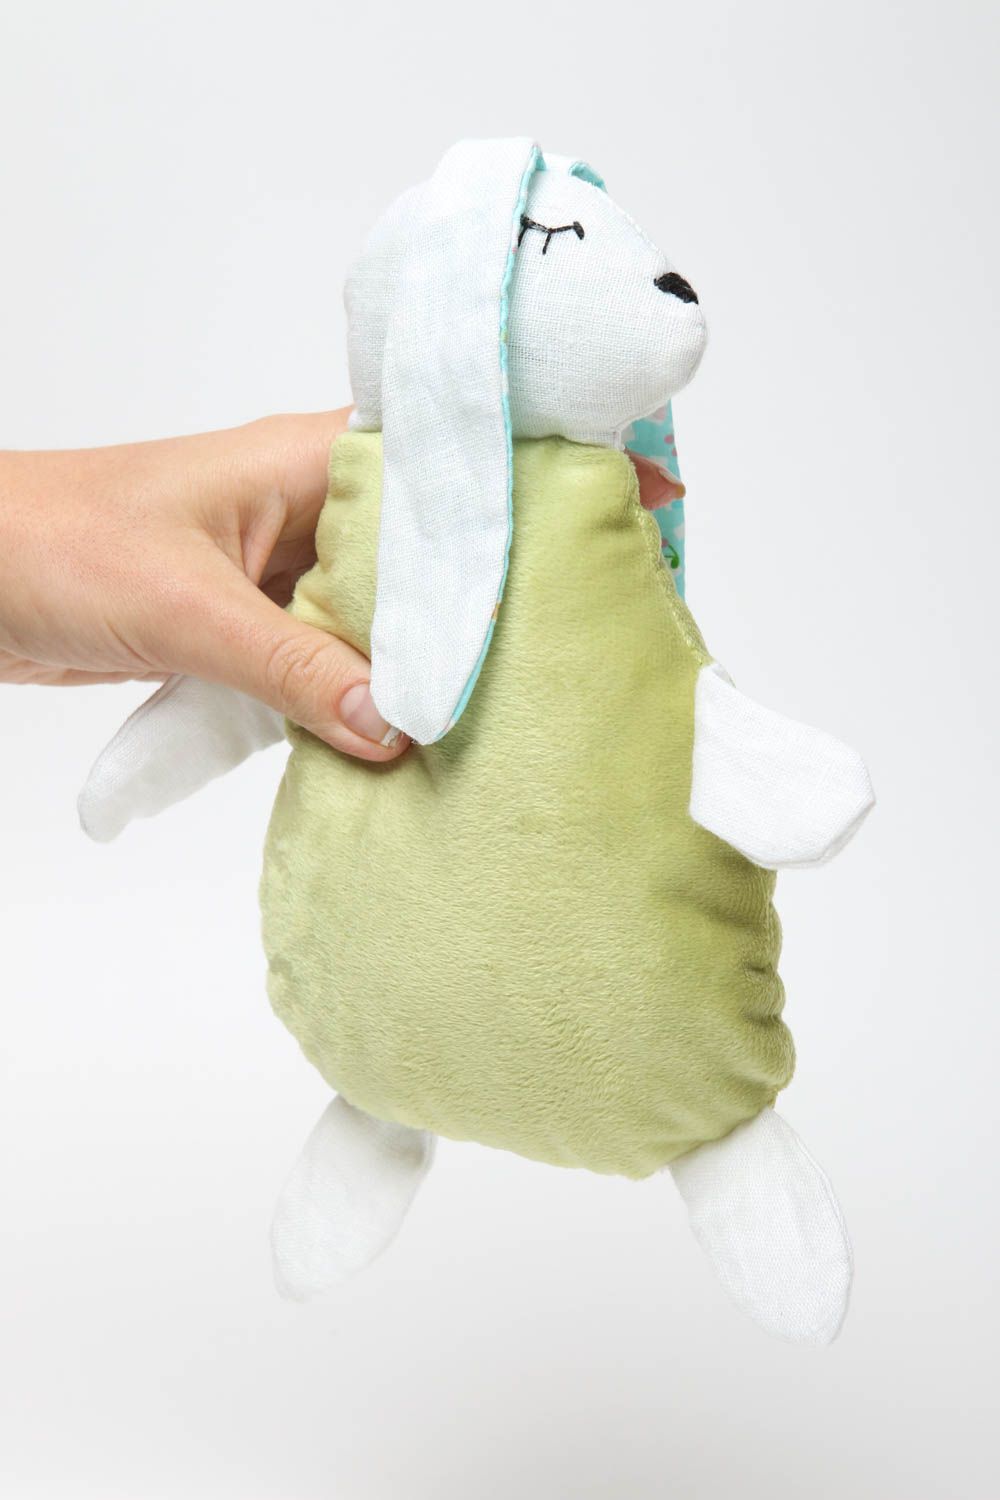 Stylish handmade soft toy rag doll birthday gift ideas best toys for kids photo 5